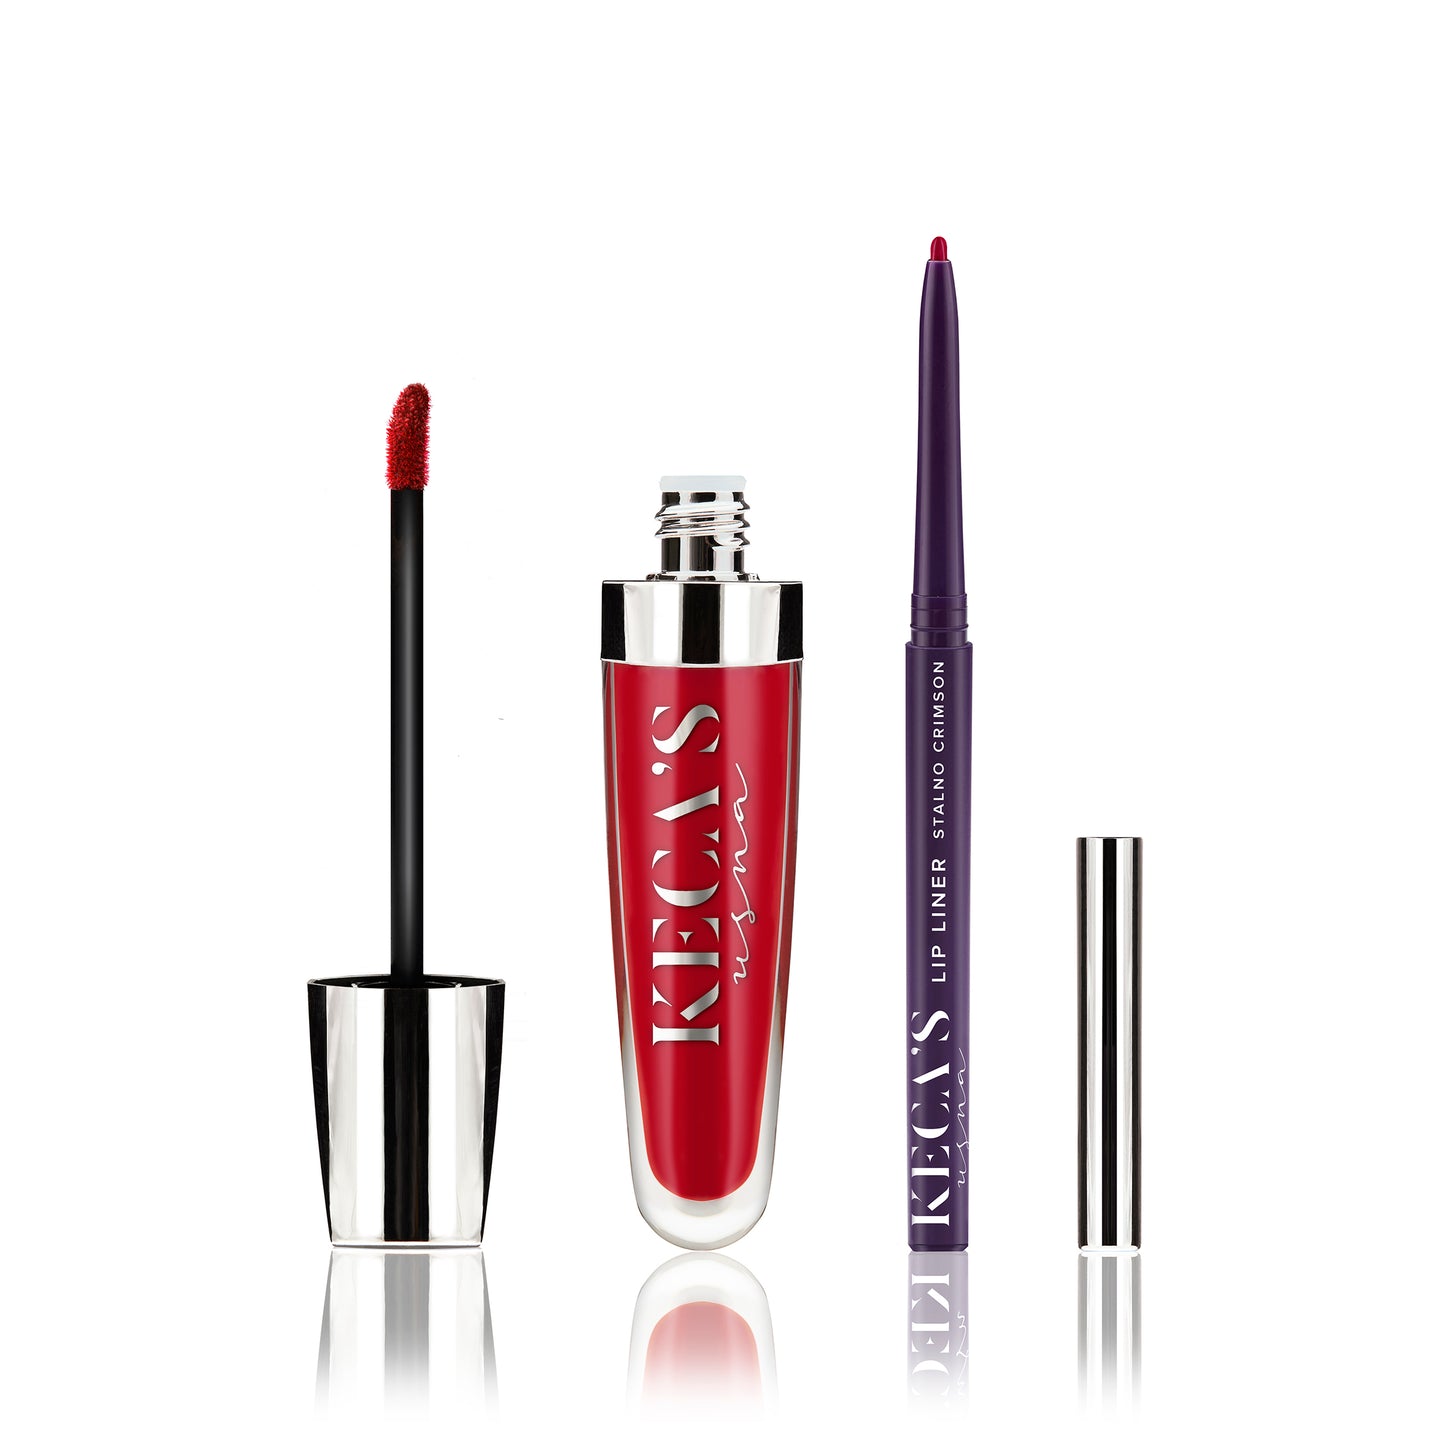 Stalno Crimson Matte Finish - The Long-lasting Liquid Lipstick And Lip Liner